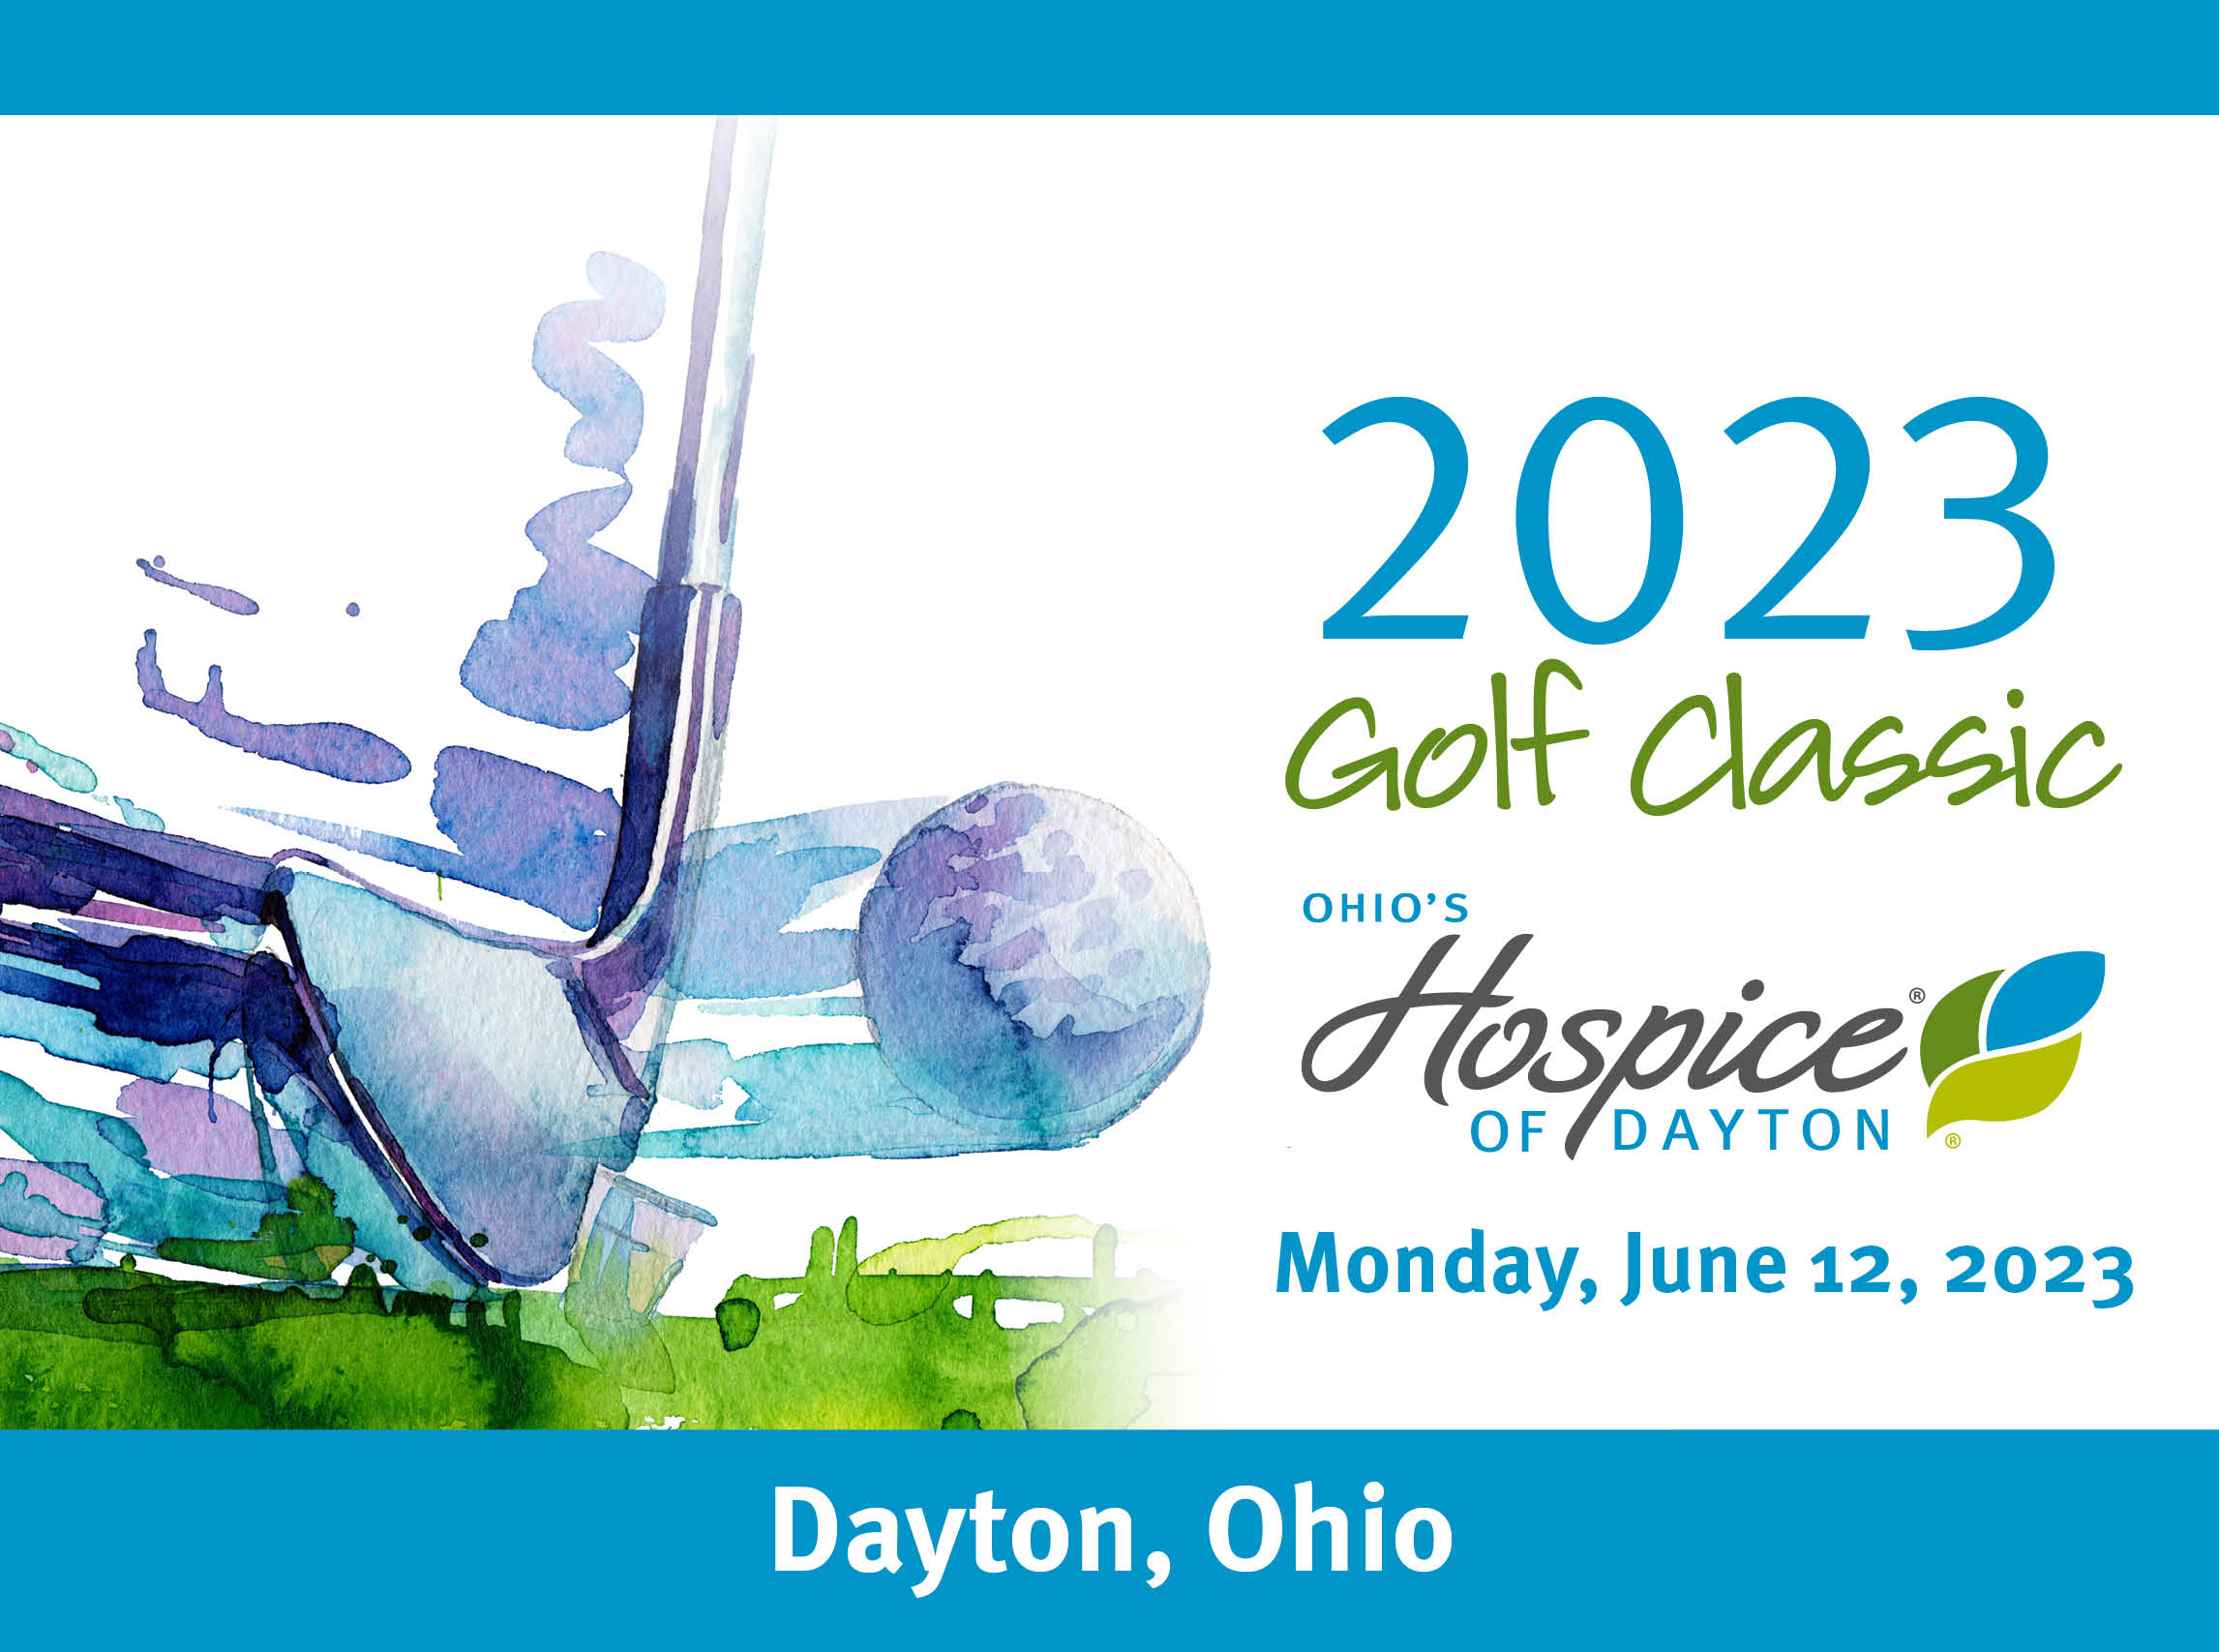 2023 Golf Classic, Ohio's Hospice of Dayton, Monday, June 12, 2023, Dayton, Ohio